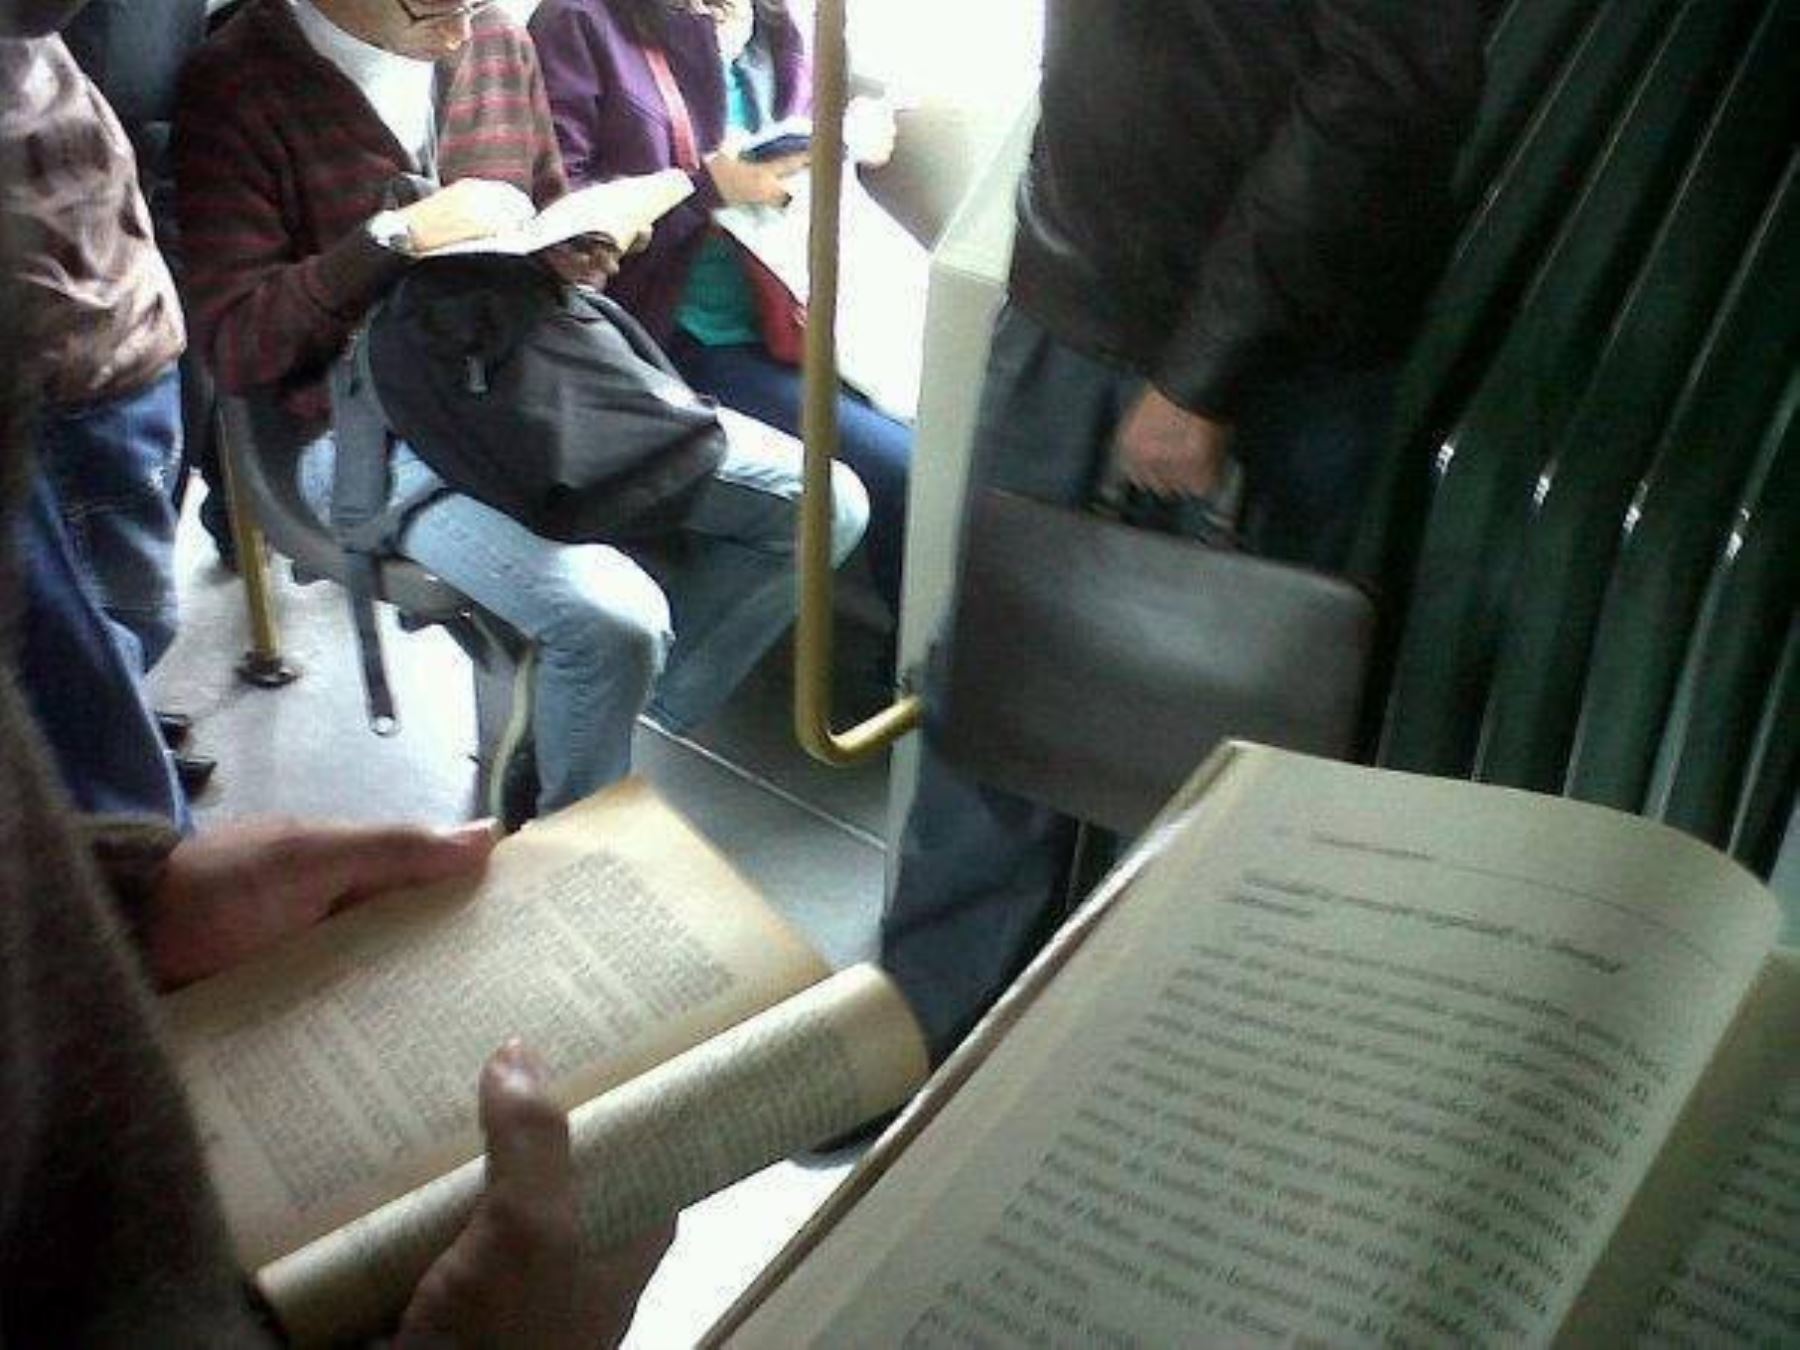 Colectivo que promueve la lectura en el transporte público propone a BCR serie numismática a favor de la lectura.